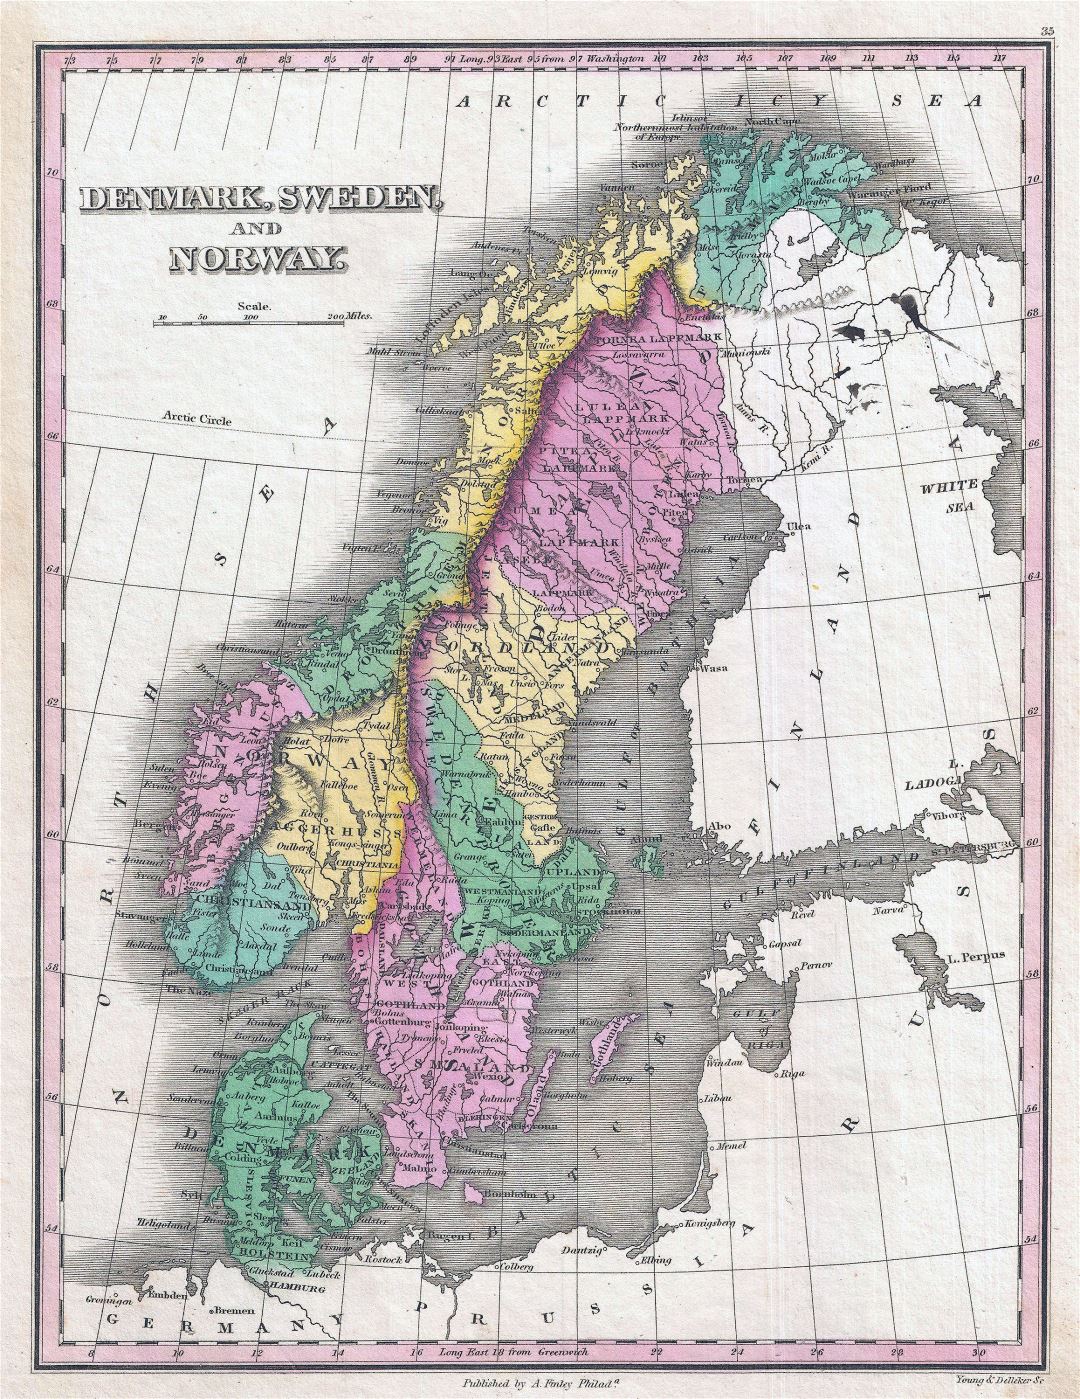 Grande detallado antiguo mapa político y administrativo de Suecia, Noruega y Dinamarca con ciudades - 1827